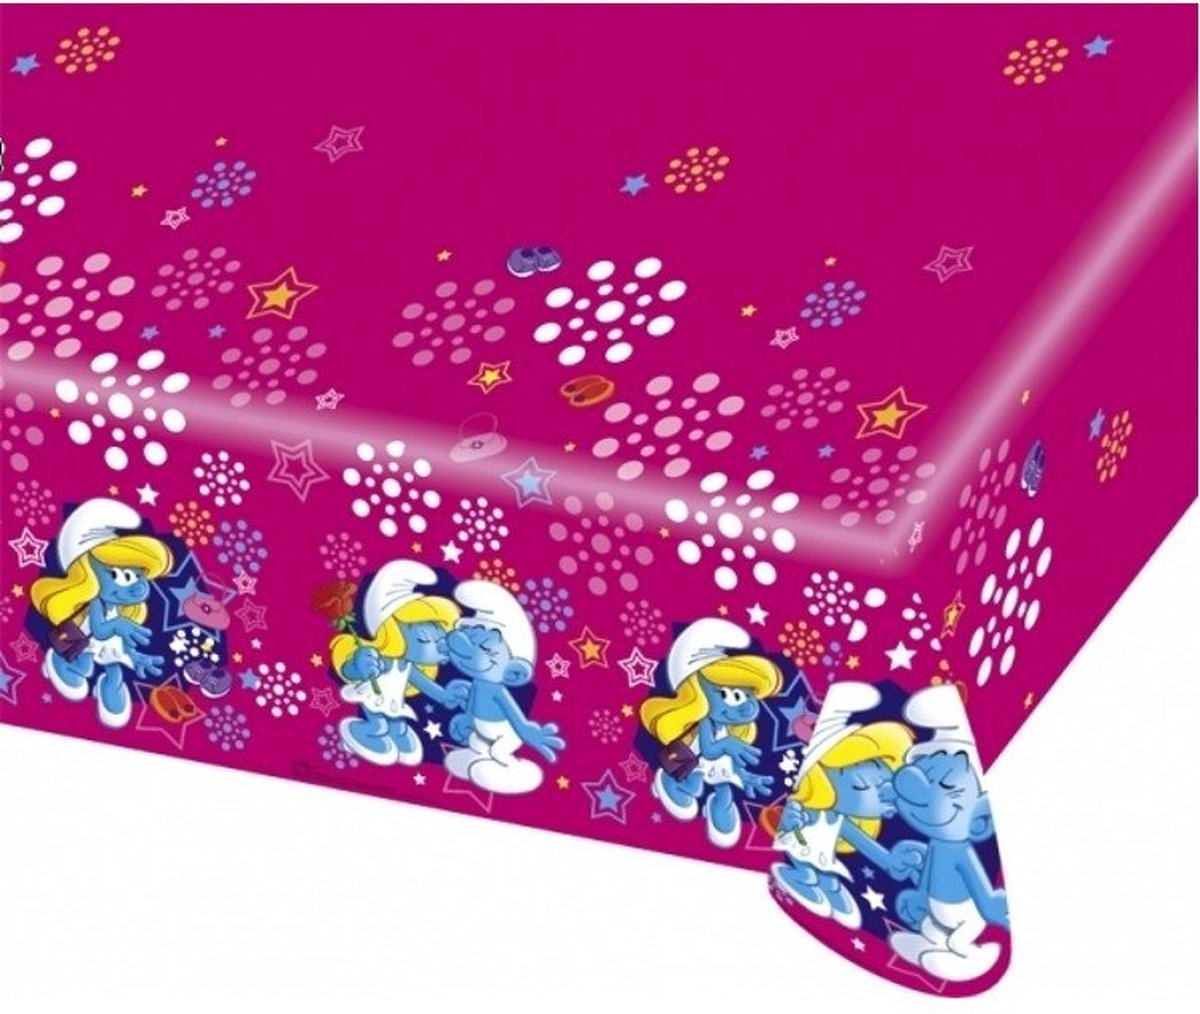 De smurfen - tafelkleed smurfin - (180x120 cm) - versiering - Themafeest versiering - plastic